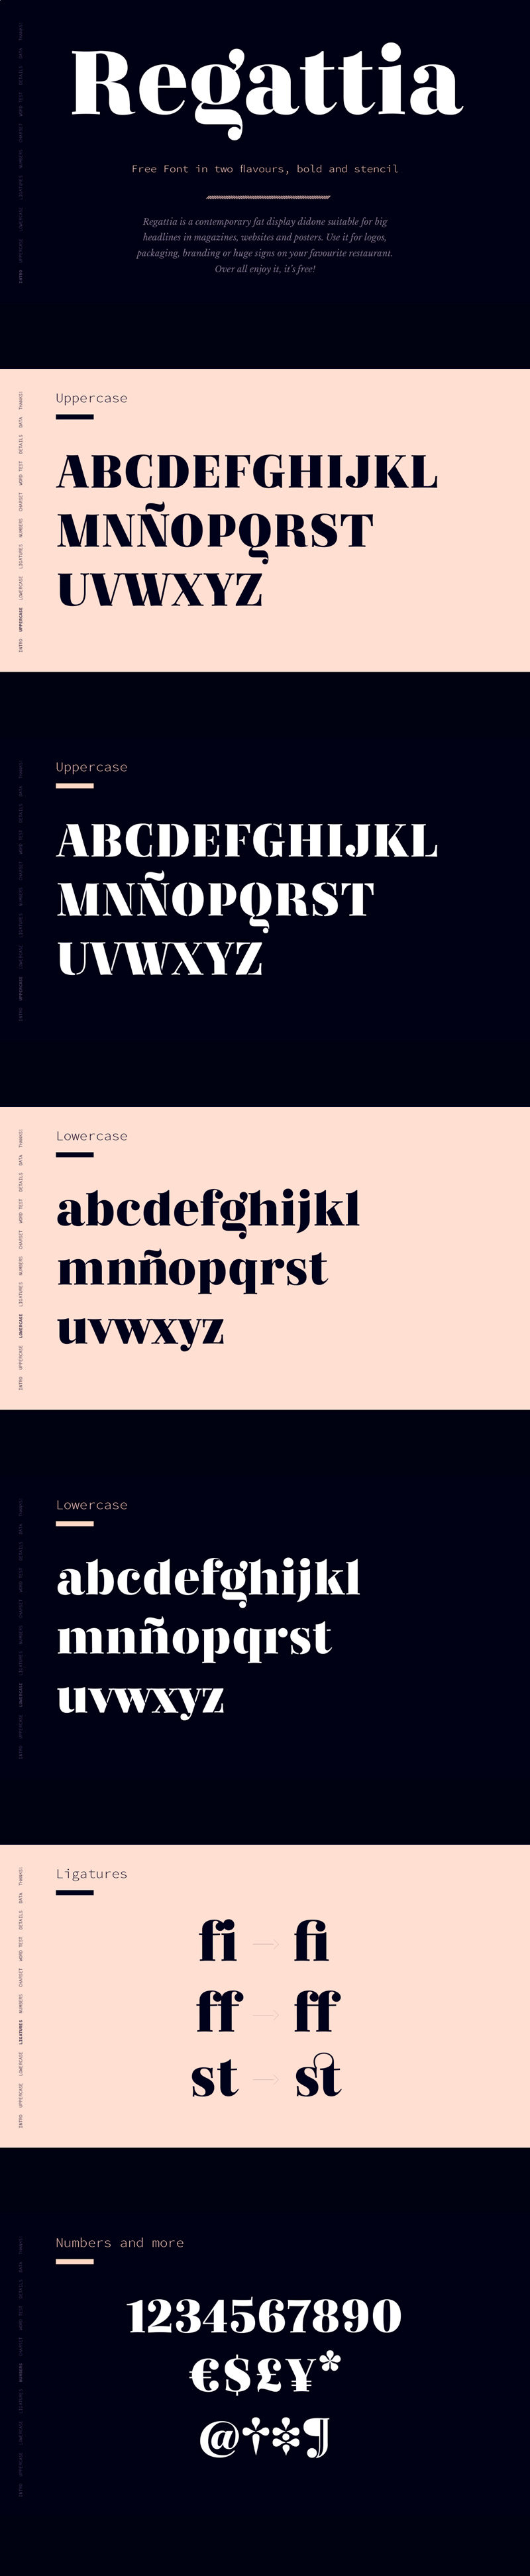 Fuente de Regattia - Typeface de serif gratuito